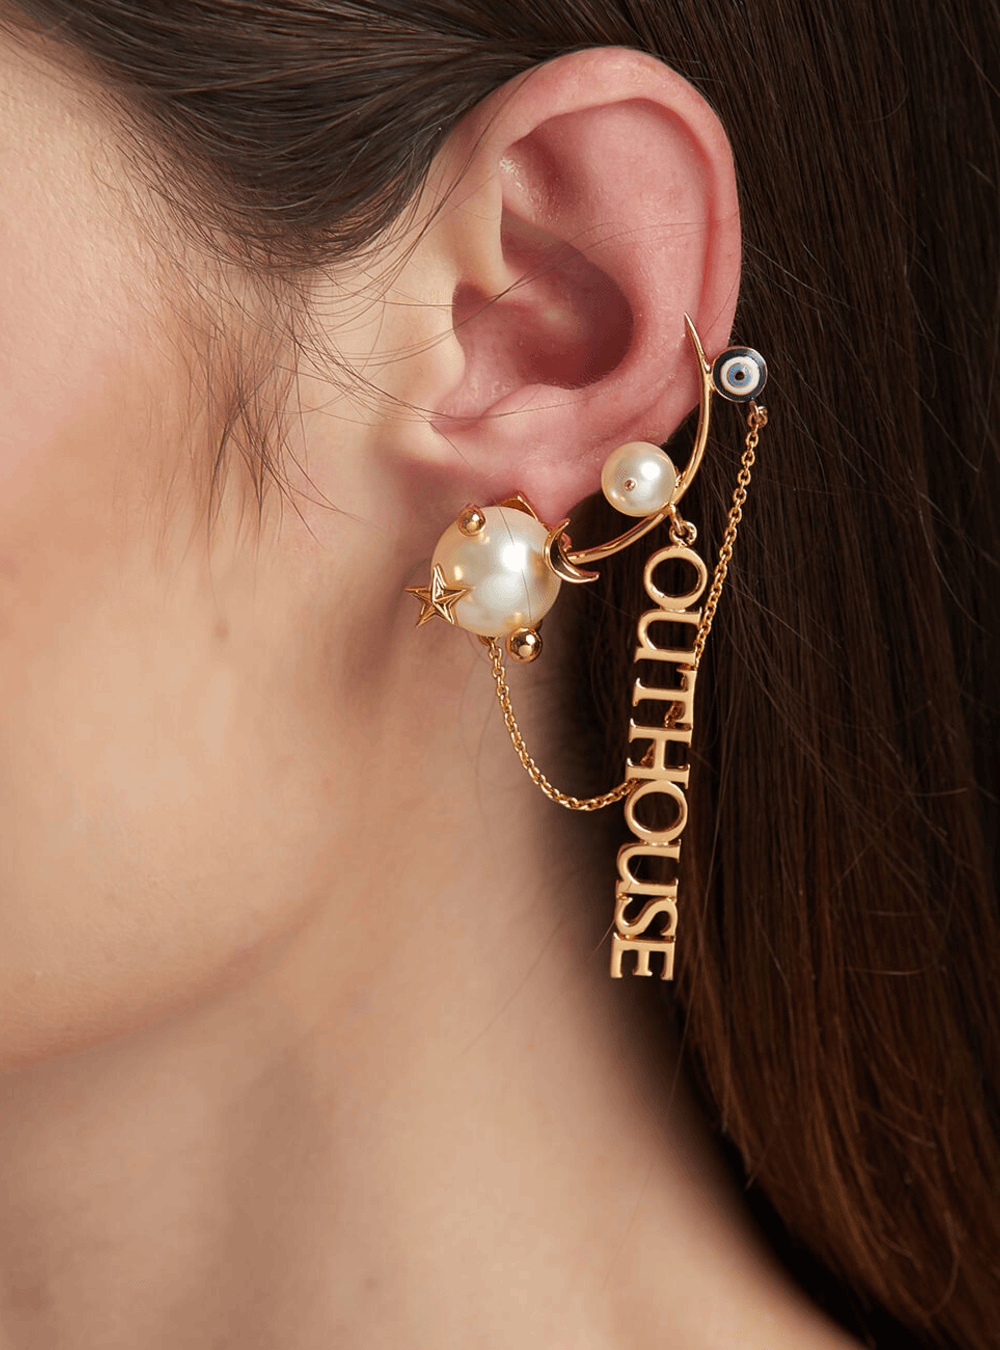 How To Stack Earrings For Multiple Piercings | Estella Bartlett – Estella  Bartlett